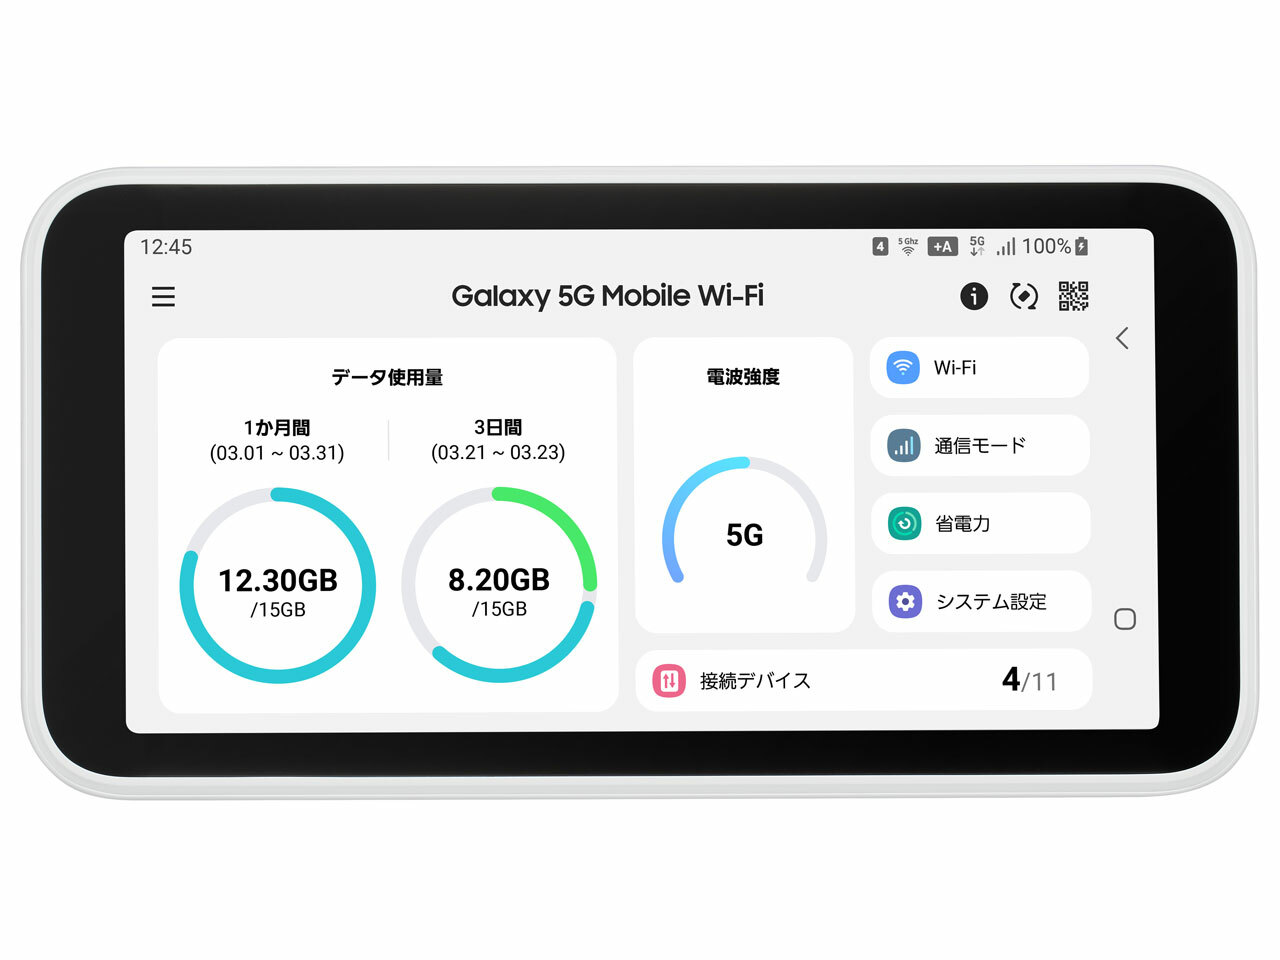 [新品未使用品]Galaxy 5G Mobile Wi-Fi SCR01 [ホワイト] AU UQ版 白ロム モバイル ルーター 判定〇<br>